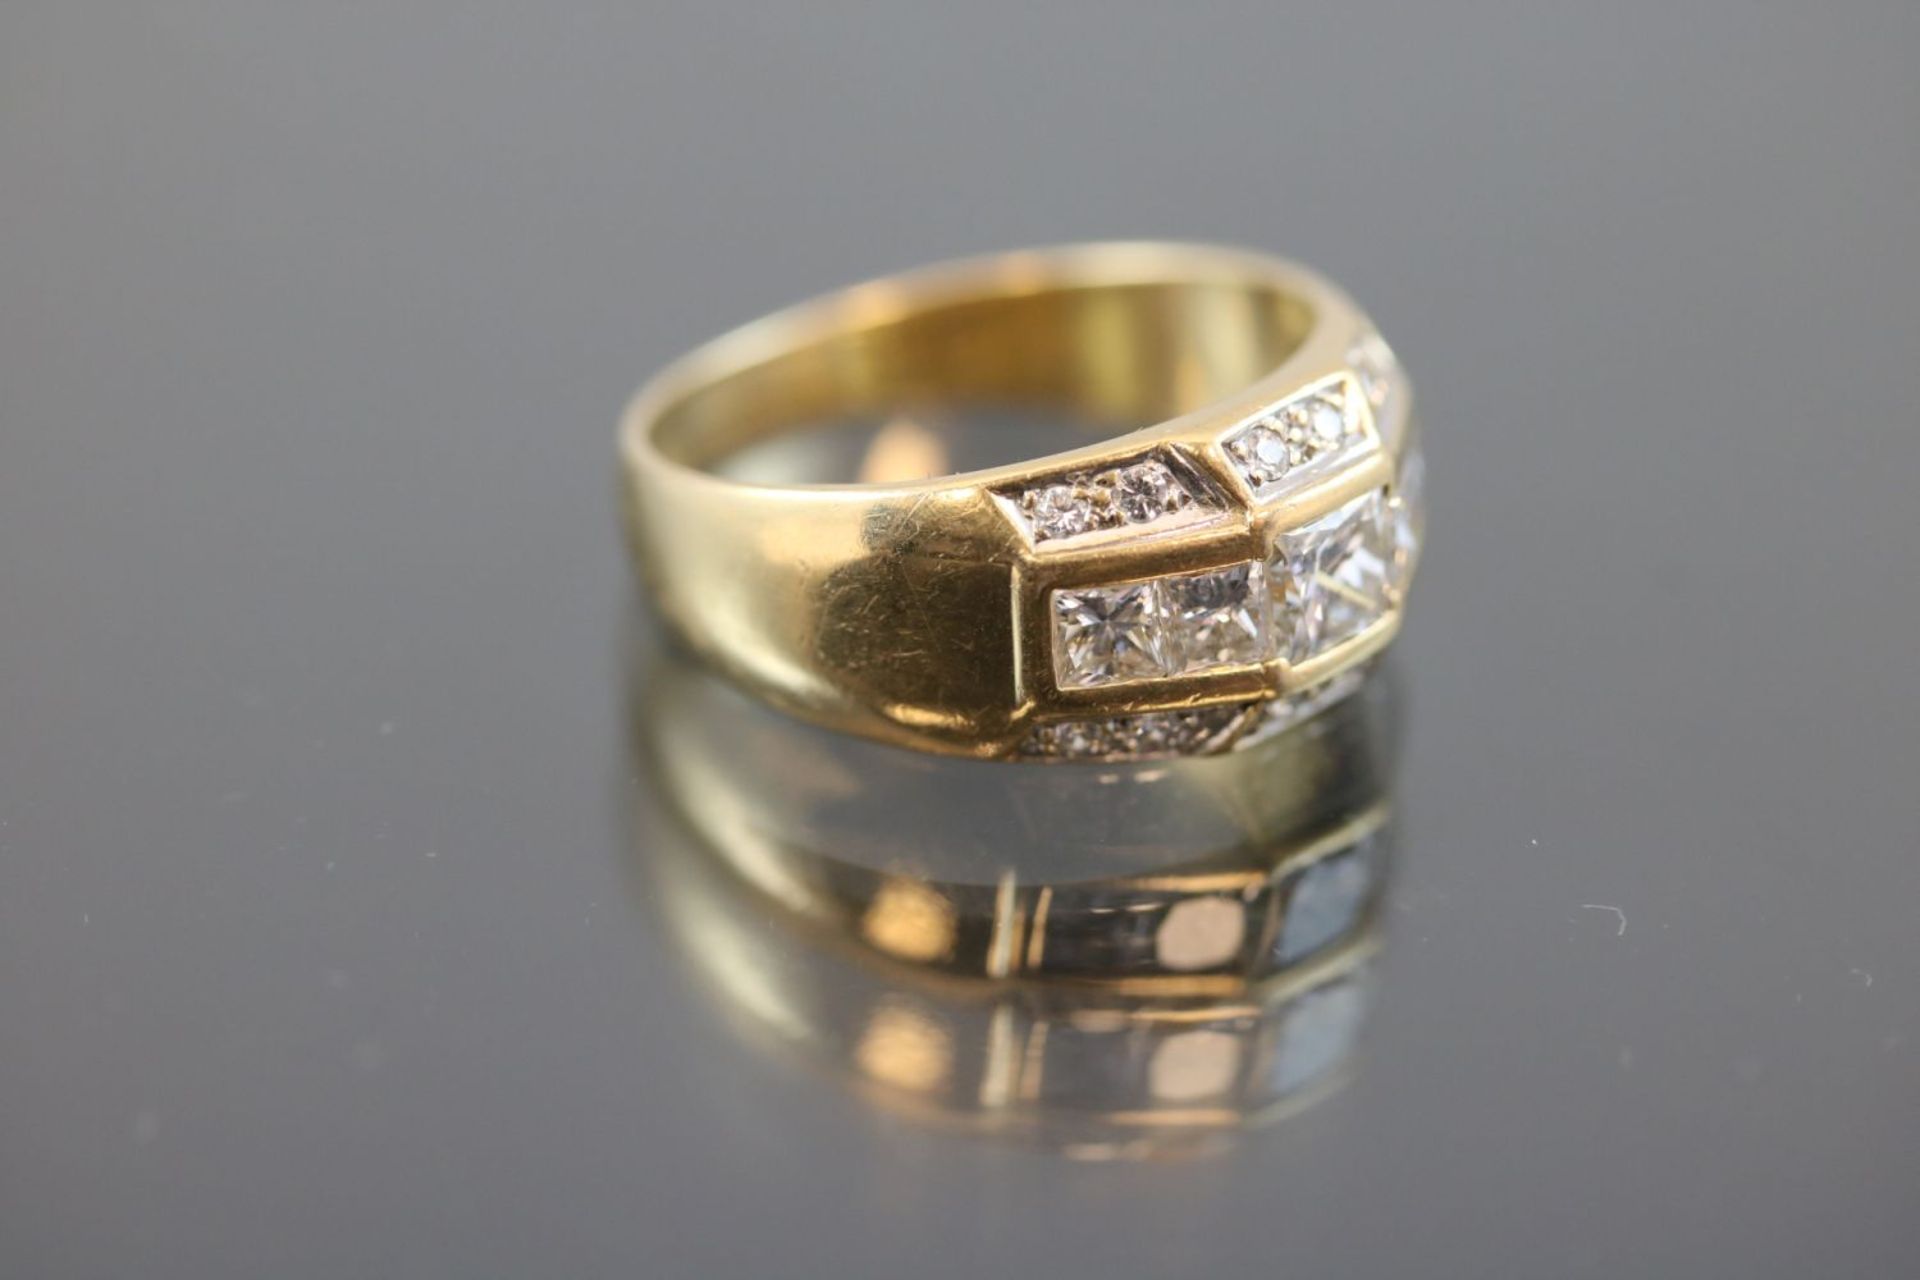 Brillant-Diamant-Ring, 750 Gold6,5 Gramm 17 Diamanten/Brillanten, 0,85 ct., Ringgröße: 56 - Bild 3 aus 3